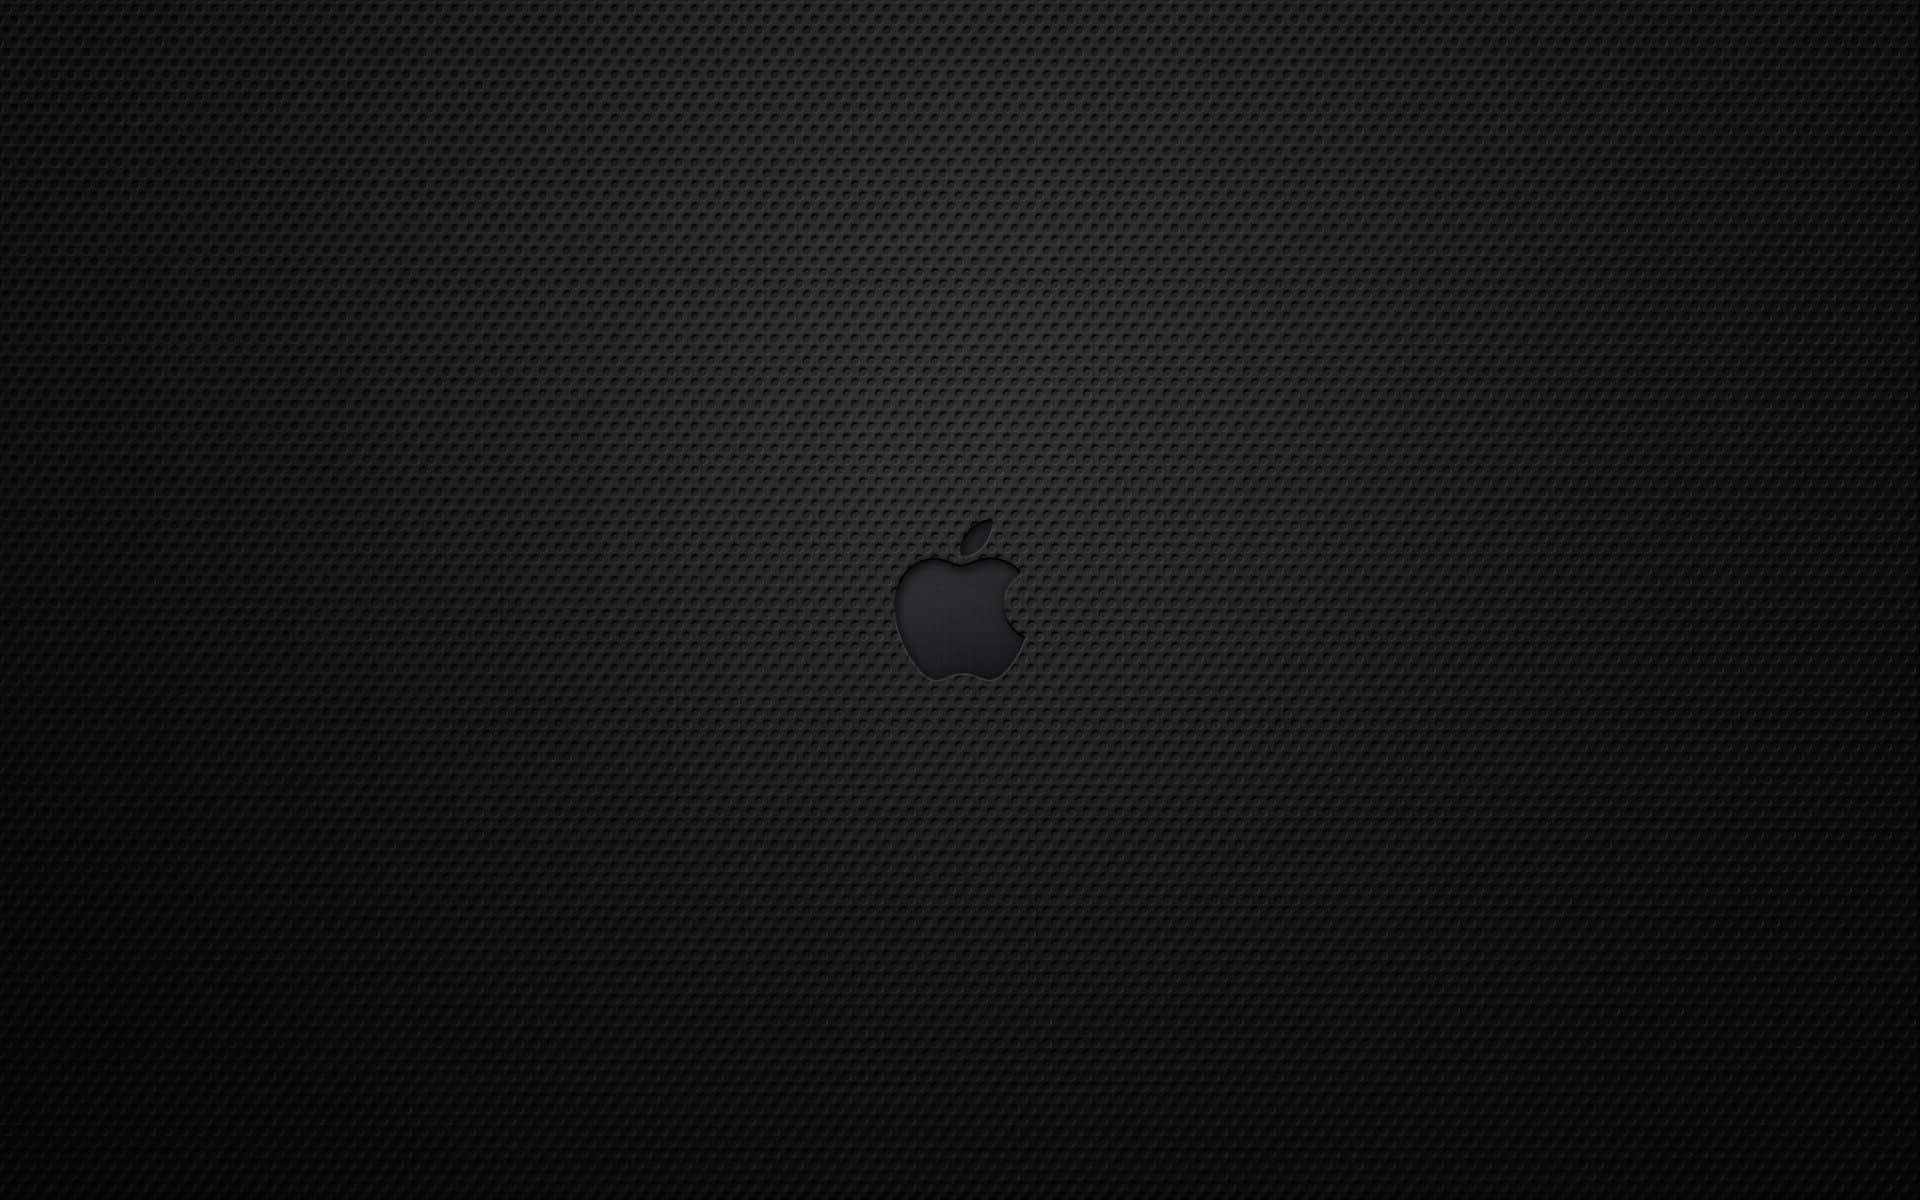 Obténla Belleza Atemporal Del Color Negro Con El Icónico Macbook De Apple. Fondo de pantalla